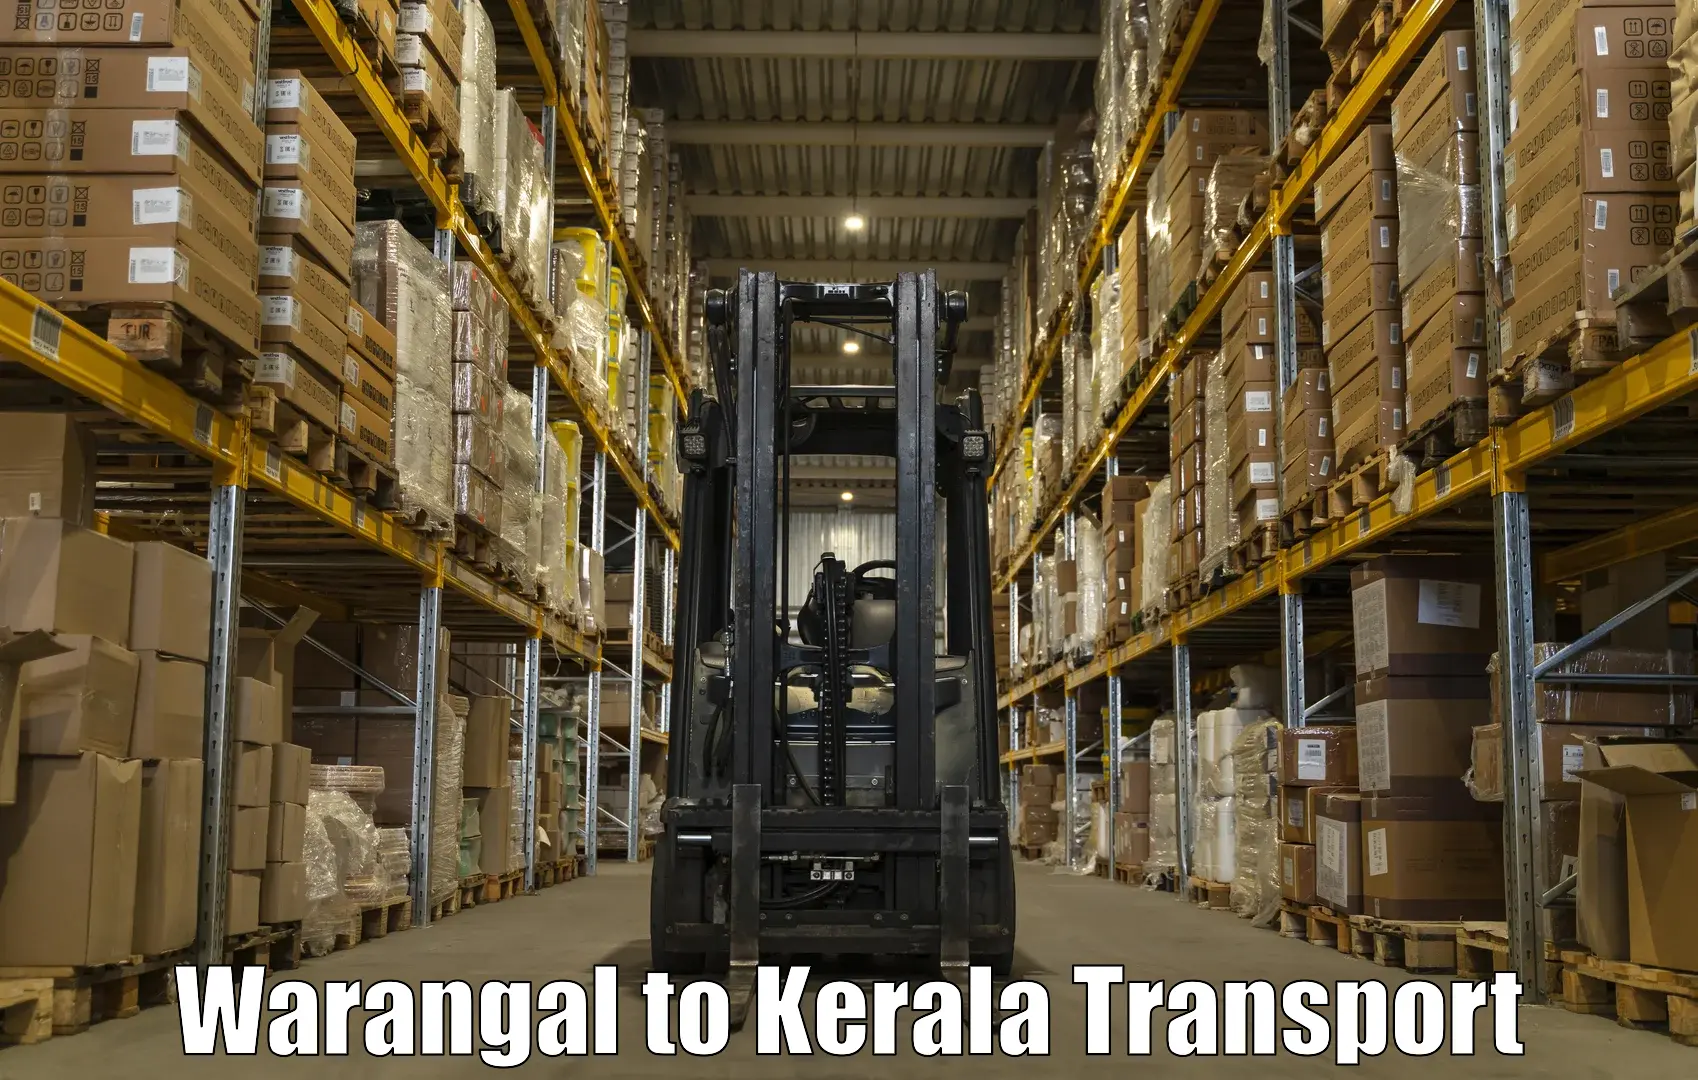 Express transport services in Warangal to Neyyattinkara